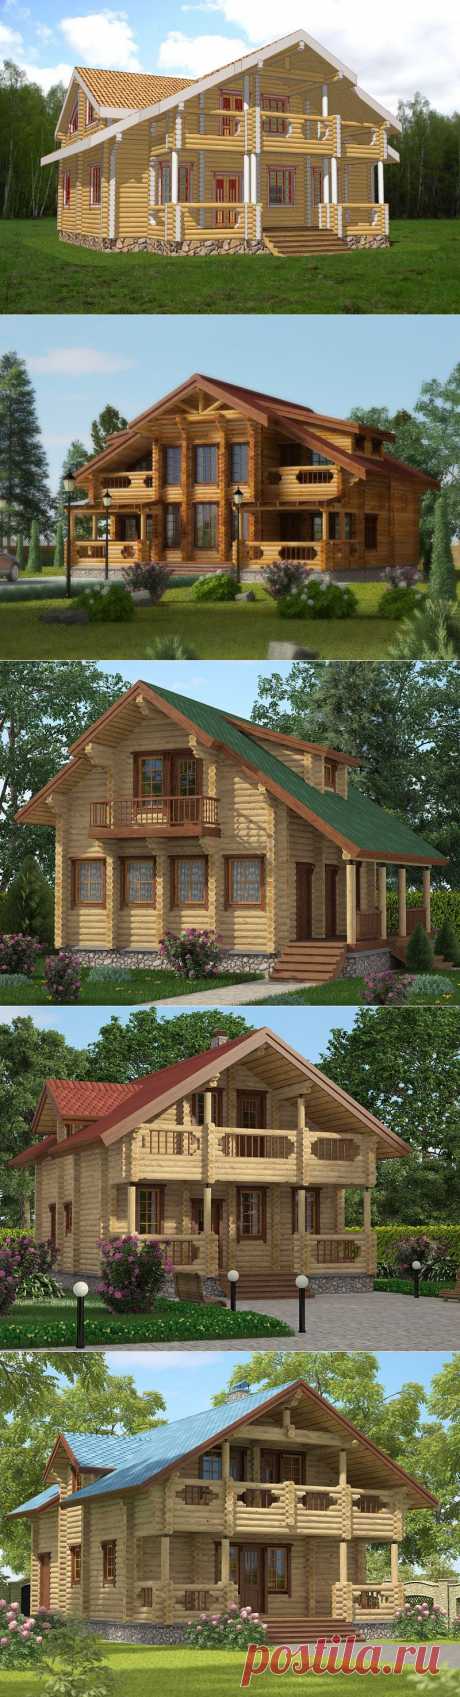 Строительство деревянных, каменных, комбинированных домов. Проектирование. Строительство из оцилиндрованного бревна.